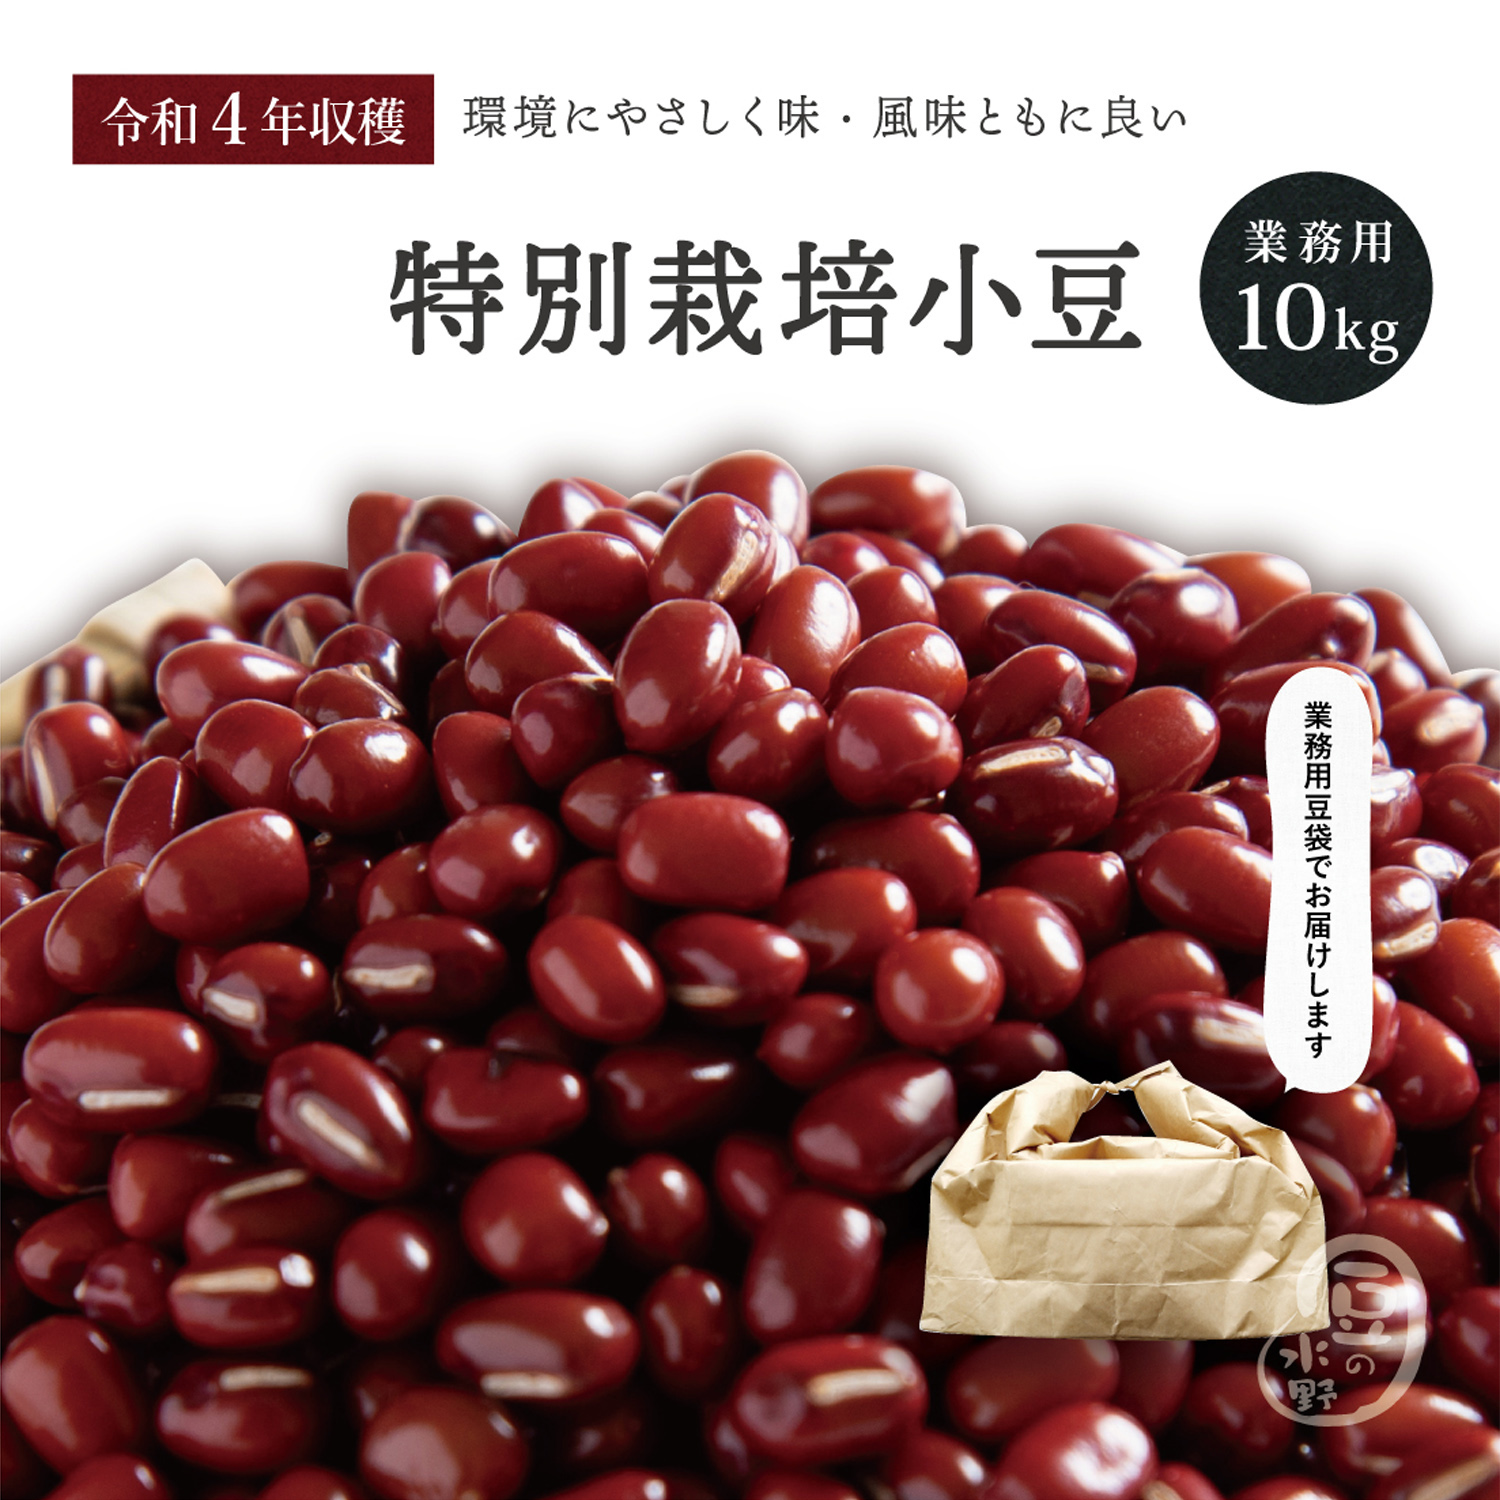 北海道産小豆(あずき) 無農薬栽培4キロ - 米